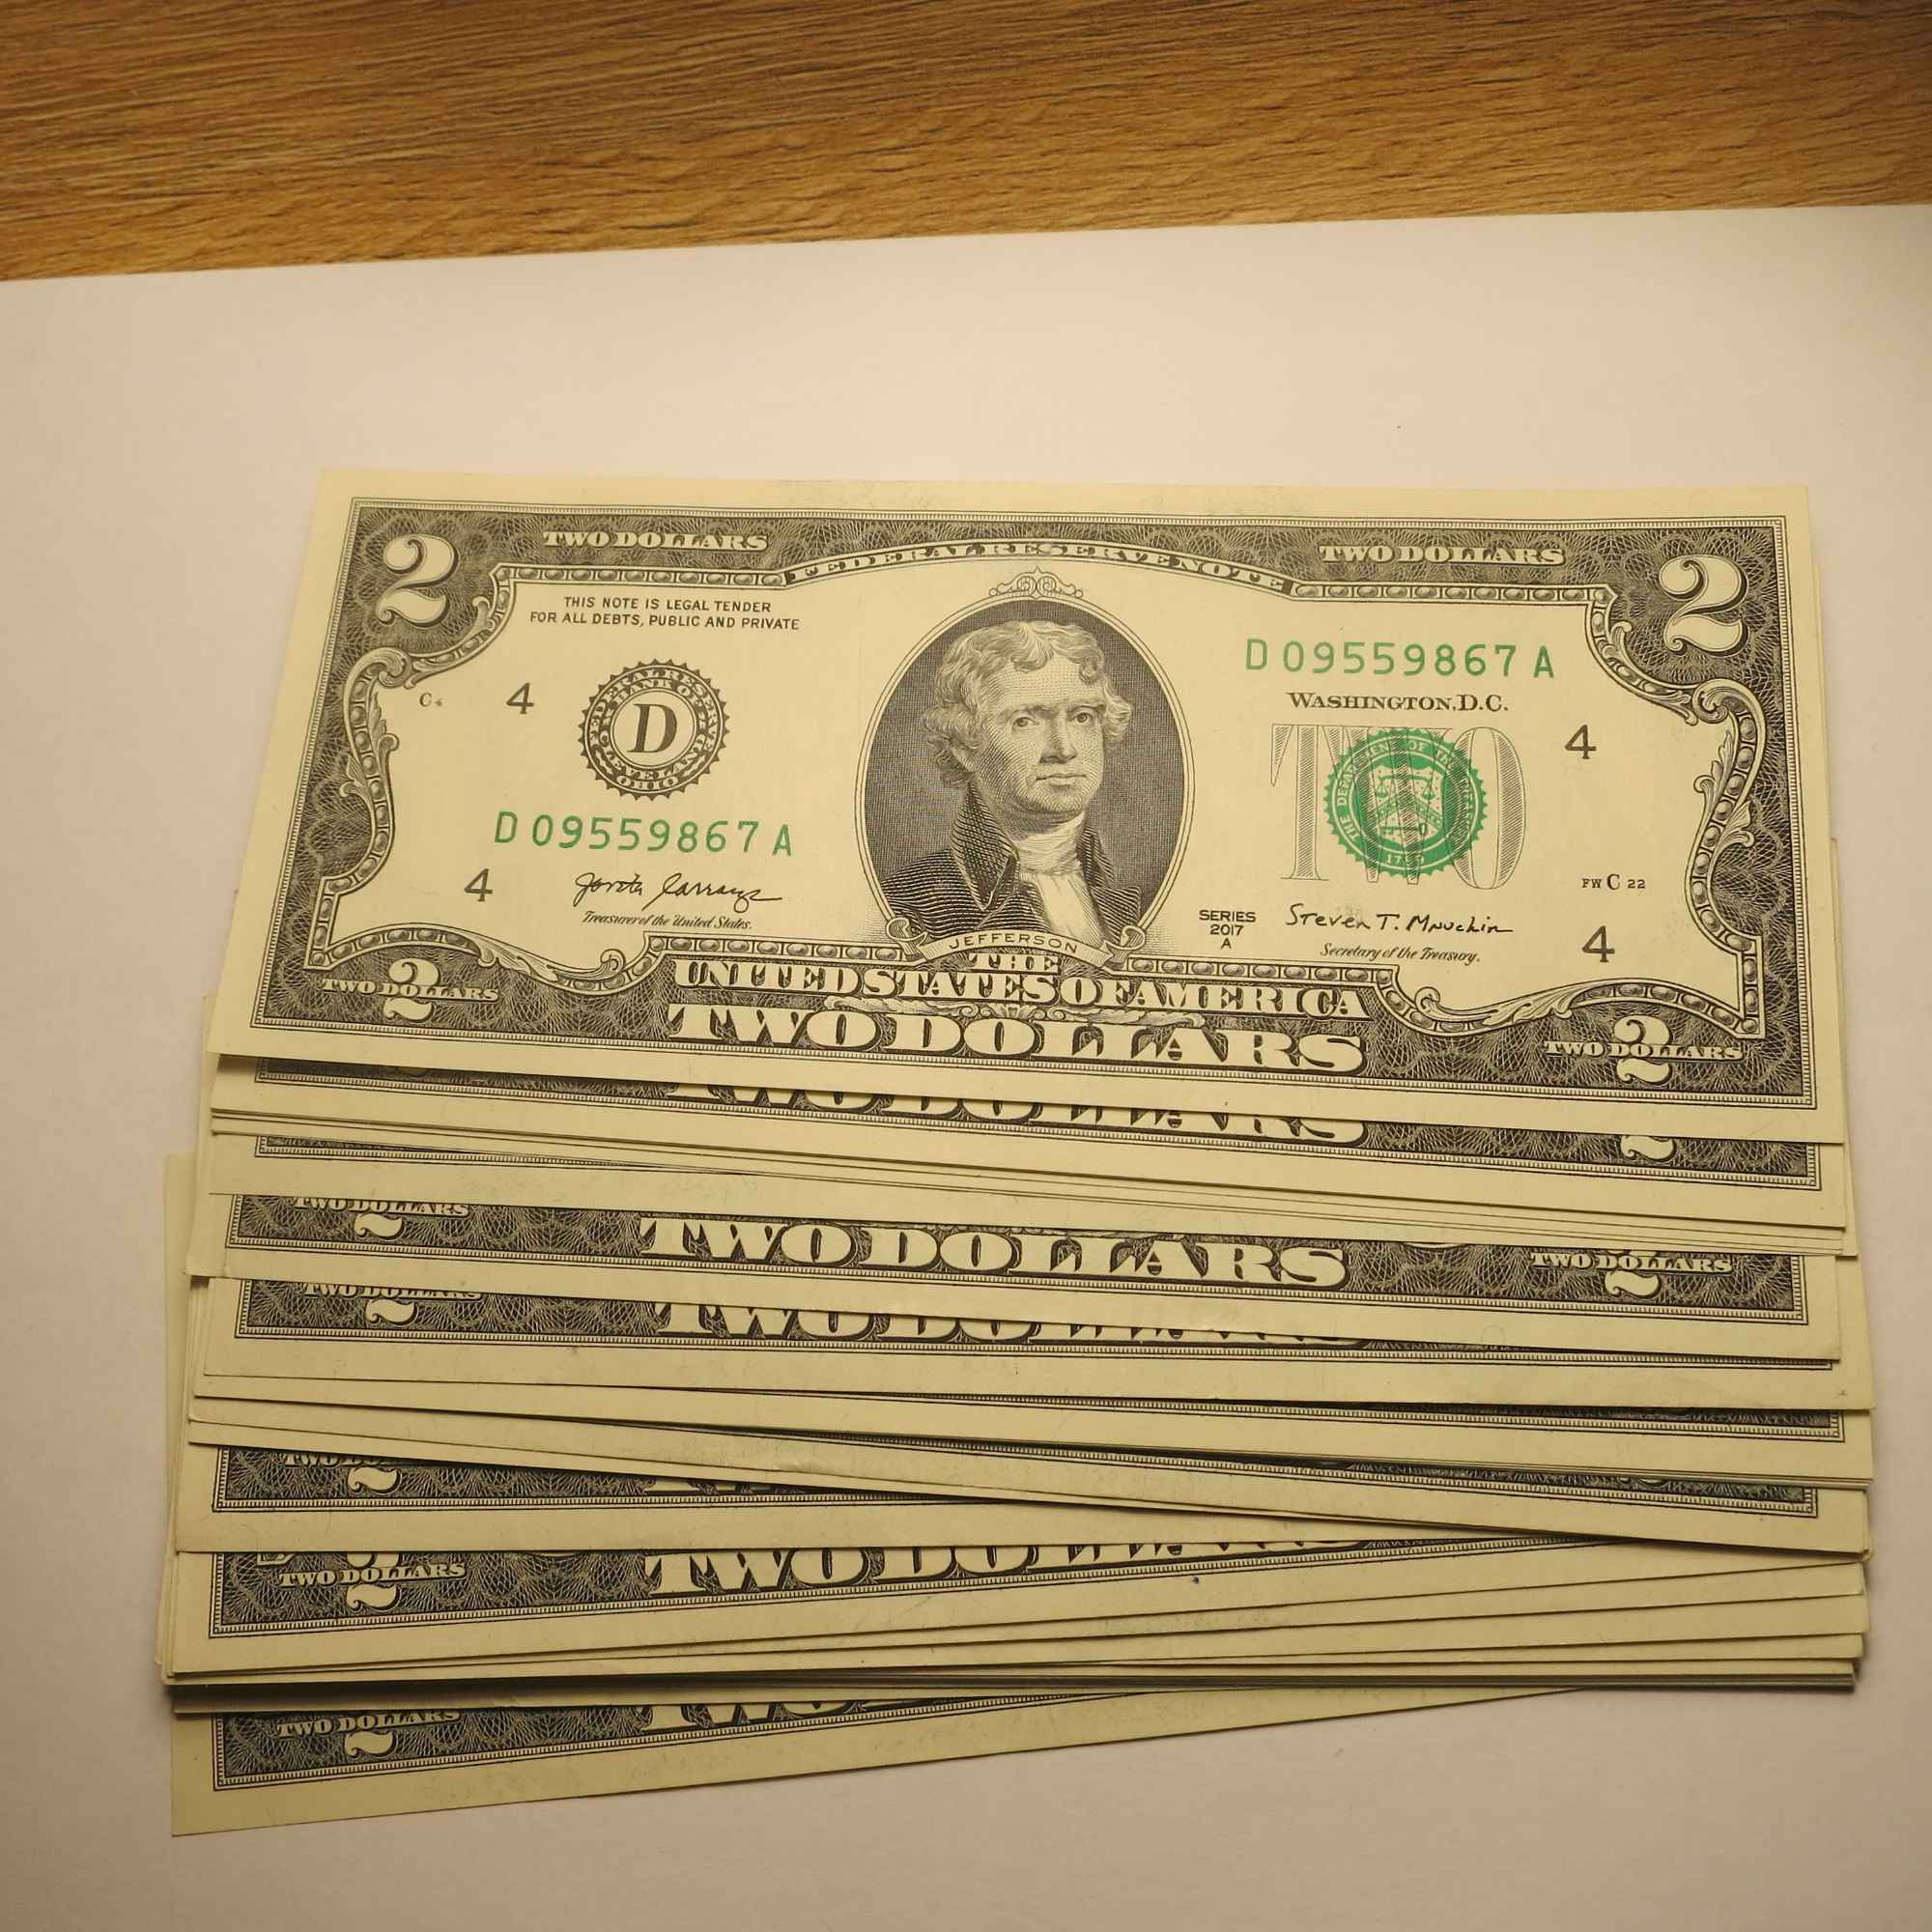 sprzedam banknot  2 $  z 2017 r . banknoty nie byly w obiegu Jarocin - zdjęcie 1